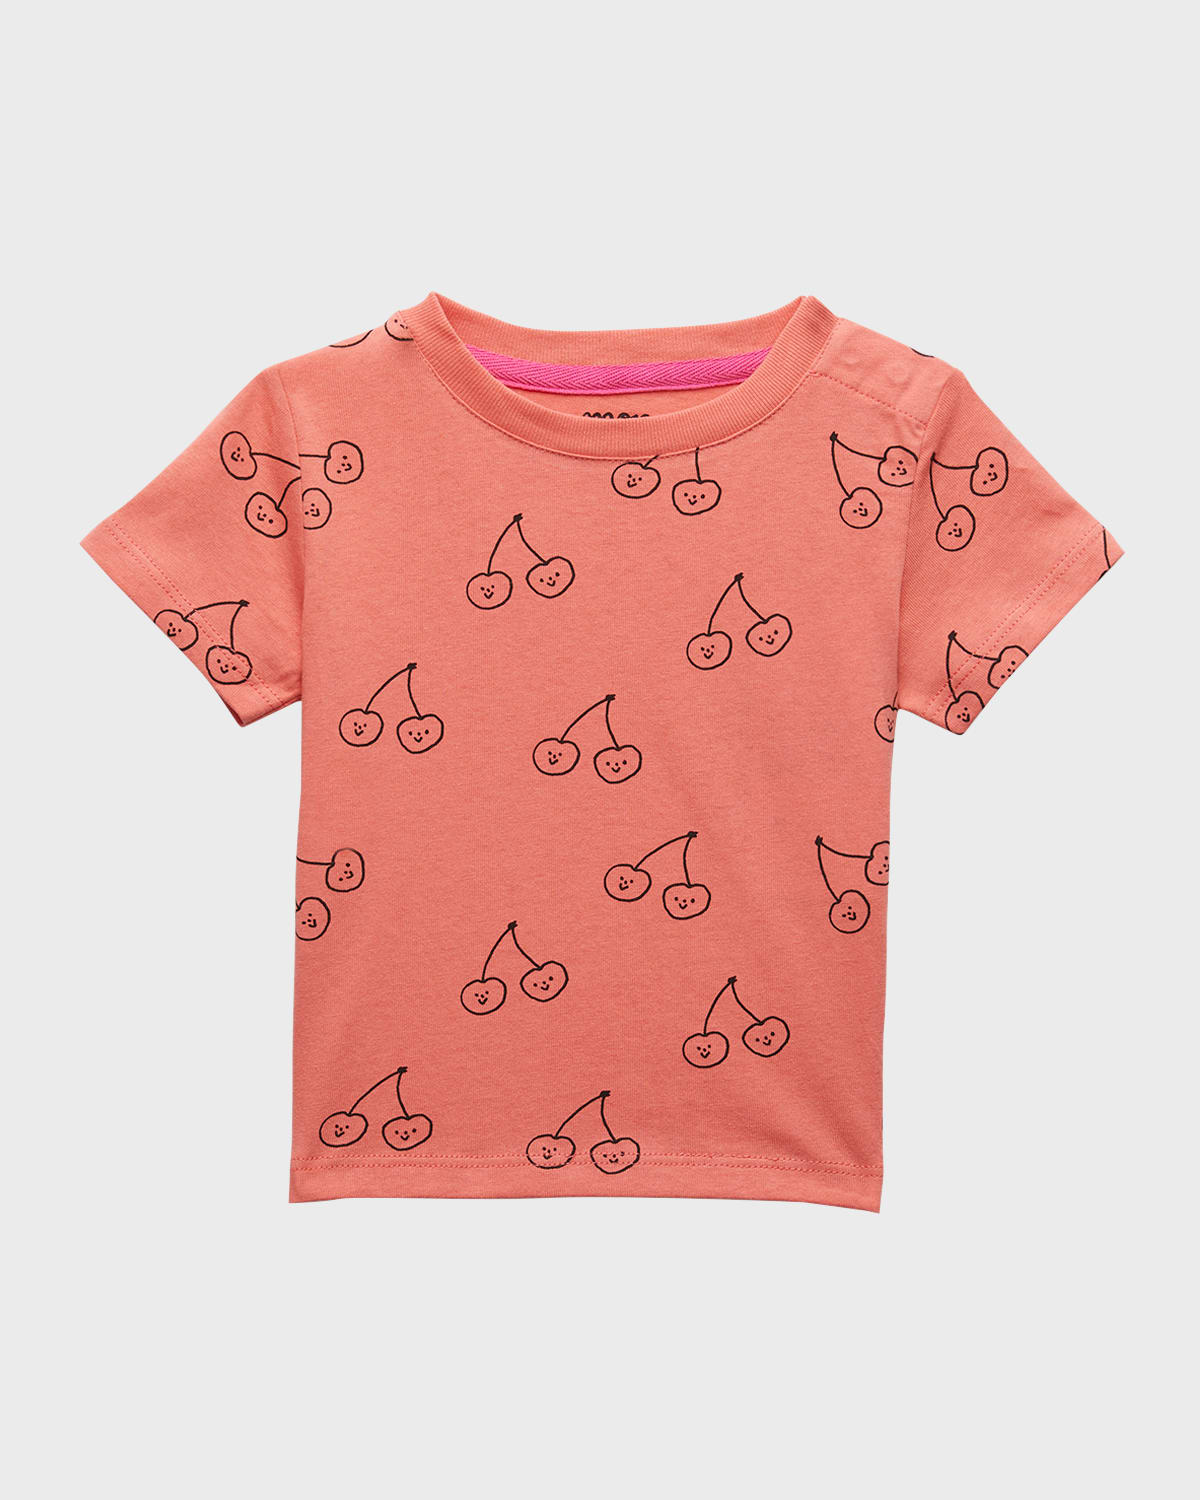 Mon Coeur Kids' Girl's Cherries Printed Baby T-shirt In Coral